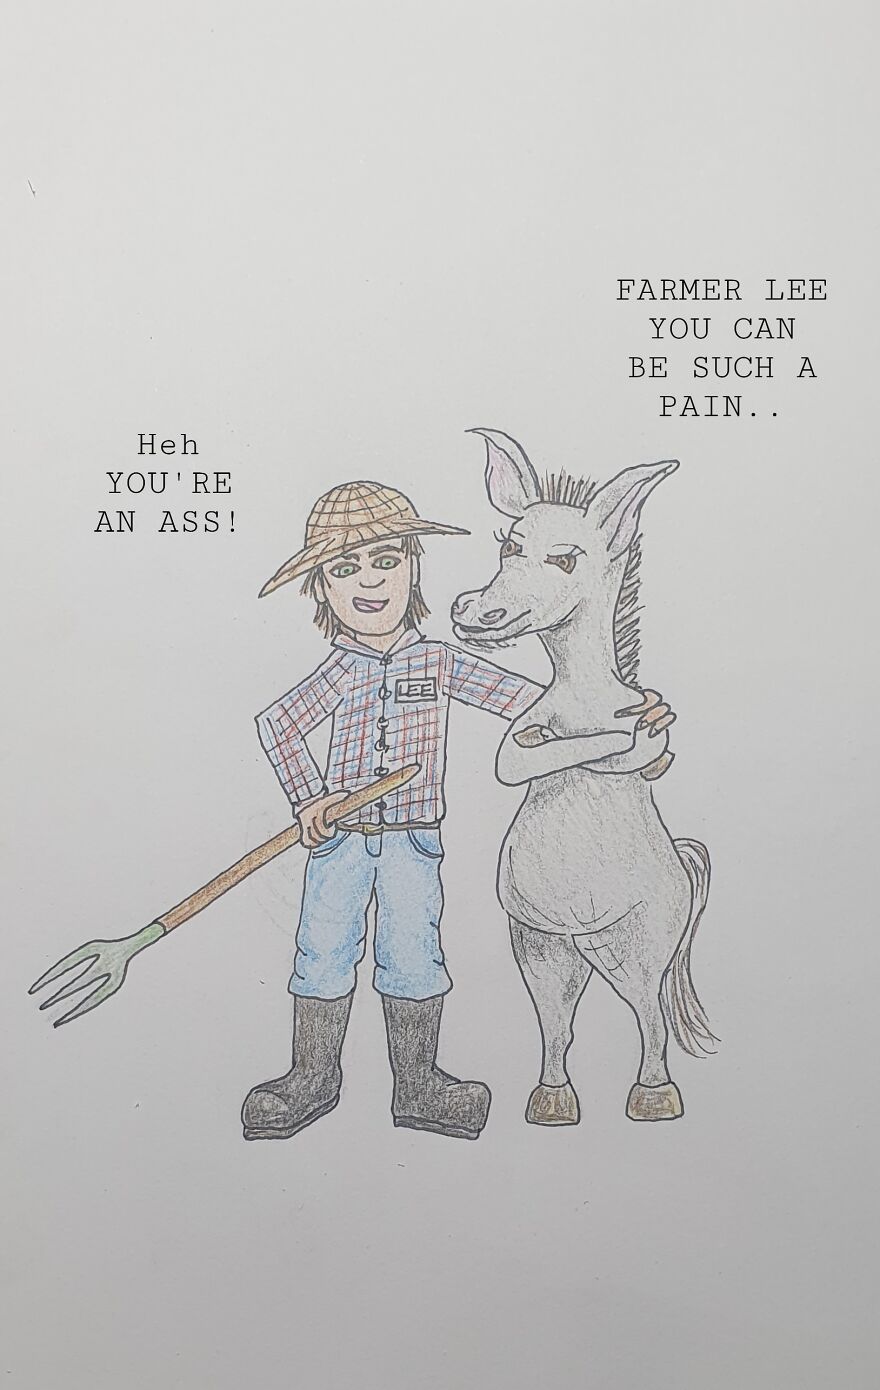 Farmer Lee